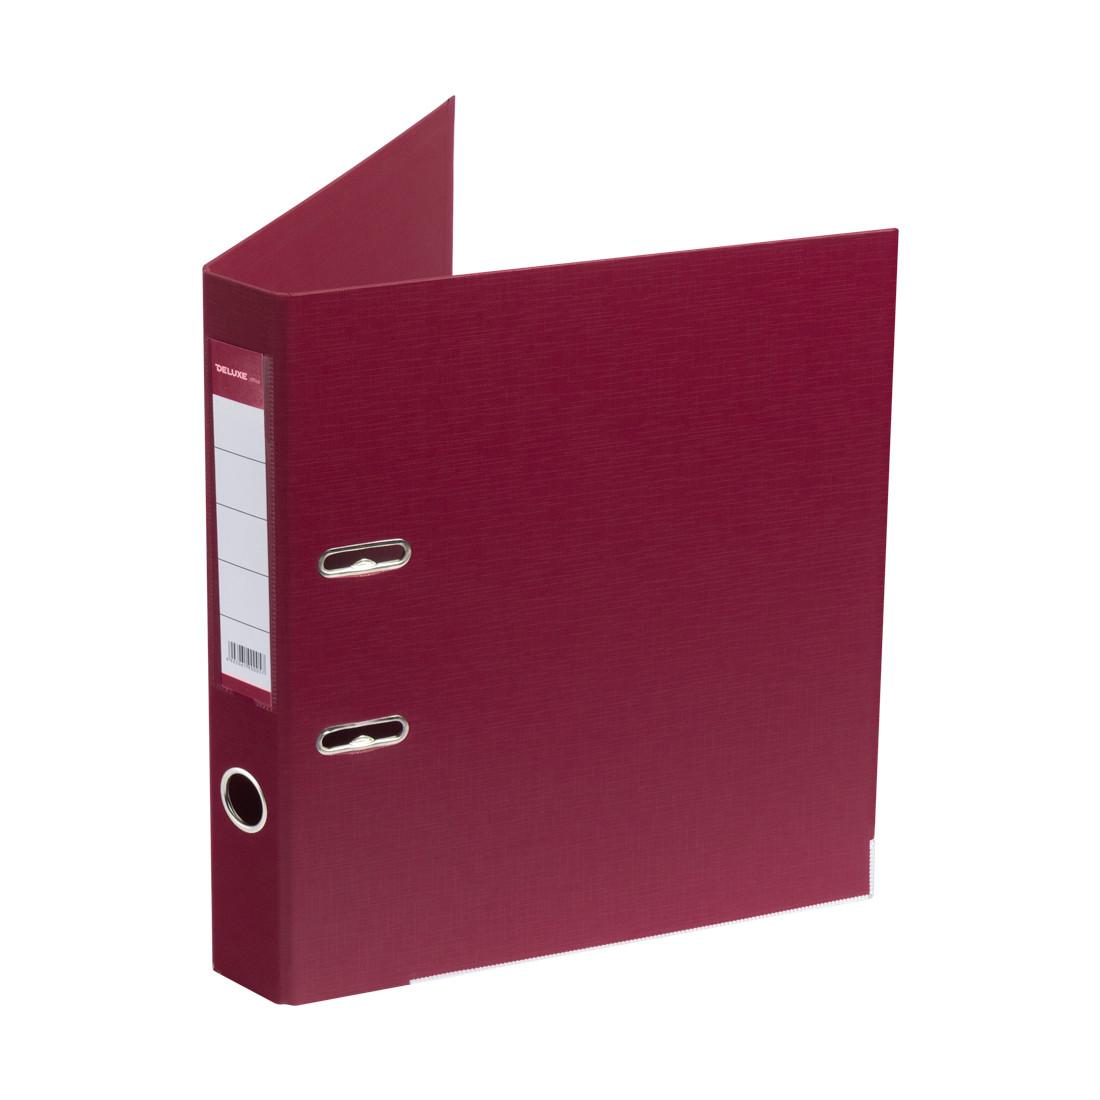 Папка-регистратор Deluxe с арочным механизмом, Office 2-WN8, А4, 50 мм, бордовый, фото 1